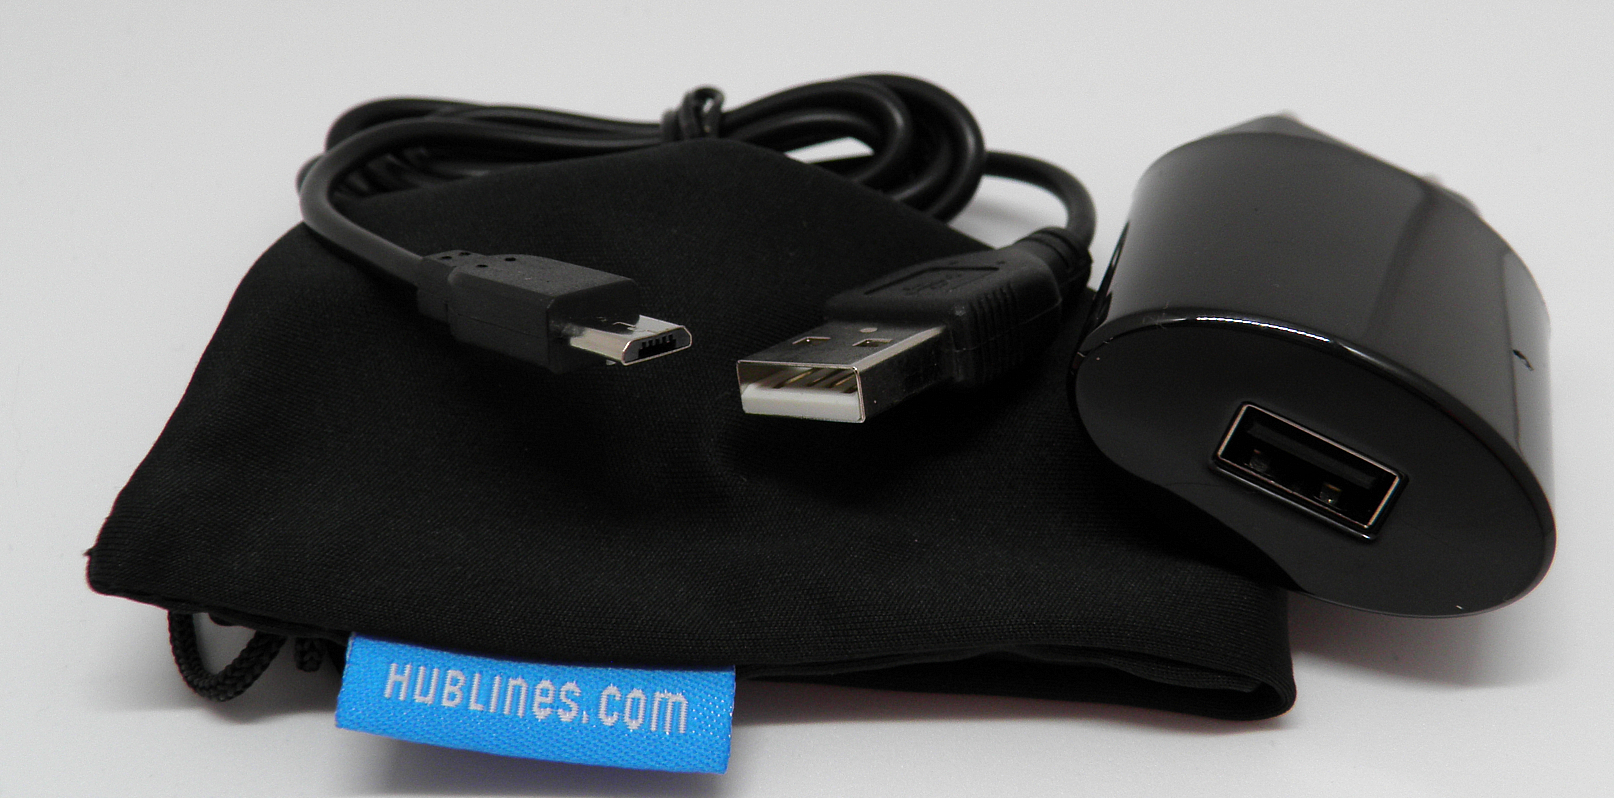 Lieferumfang: HubLines Ladegerät, Micro-USB-Kabel und kleiner Beutel.